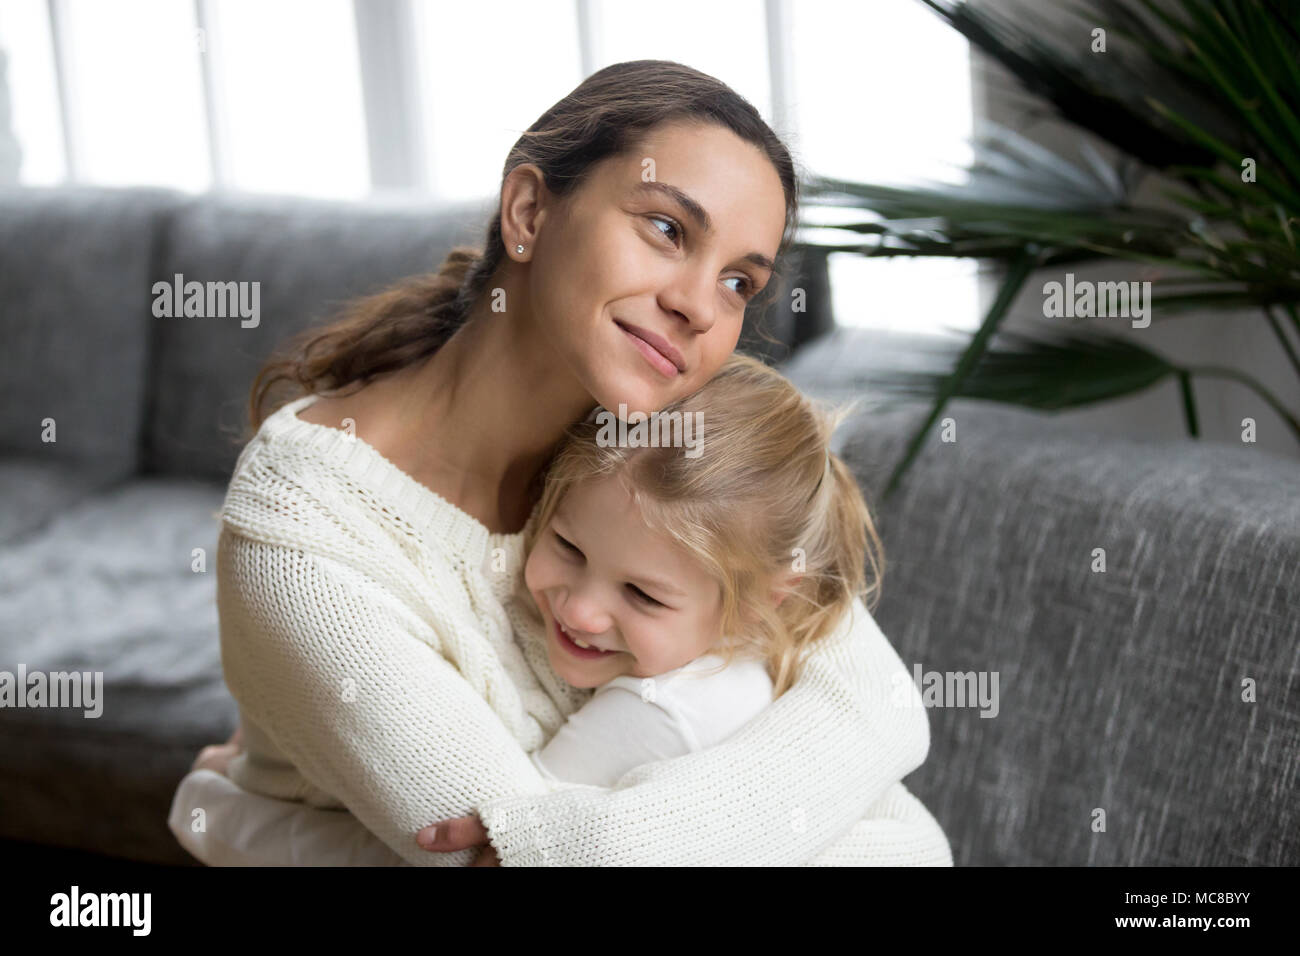 Liebevolle Mutter umarmt süsse kleine Tochter liebe Pflege unterstützen, glückliche Frau umarmt Vorschule Mädchen zu Hause, Mama und Kind herzlich warmen re Stockfoto